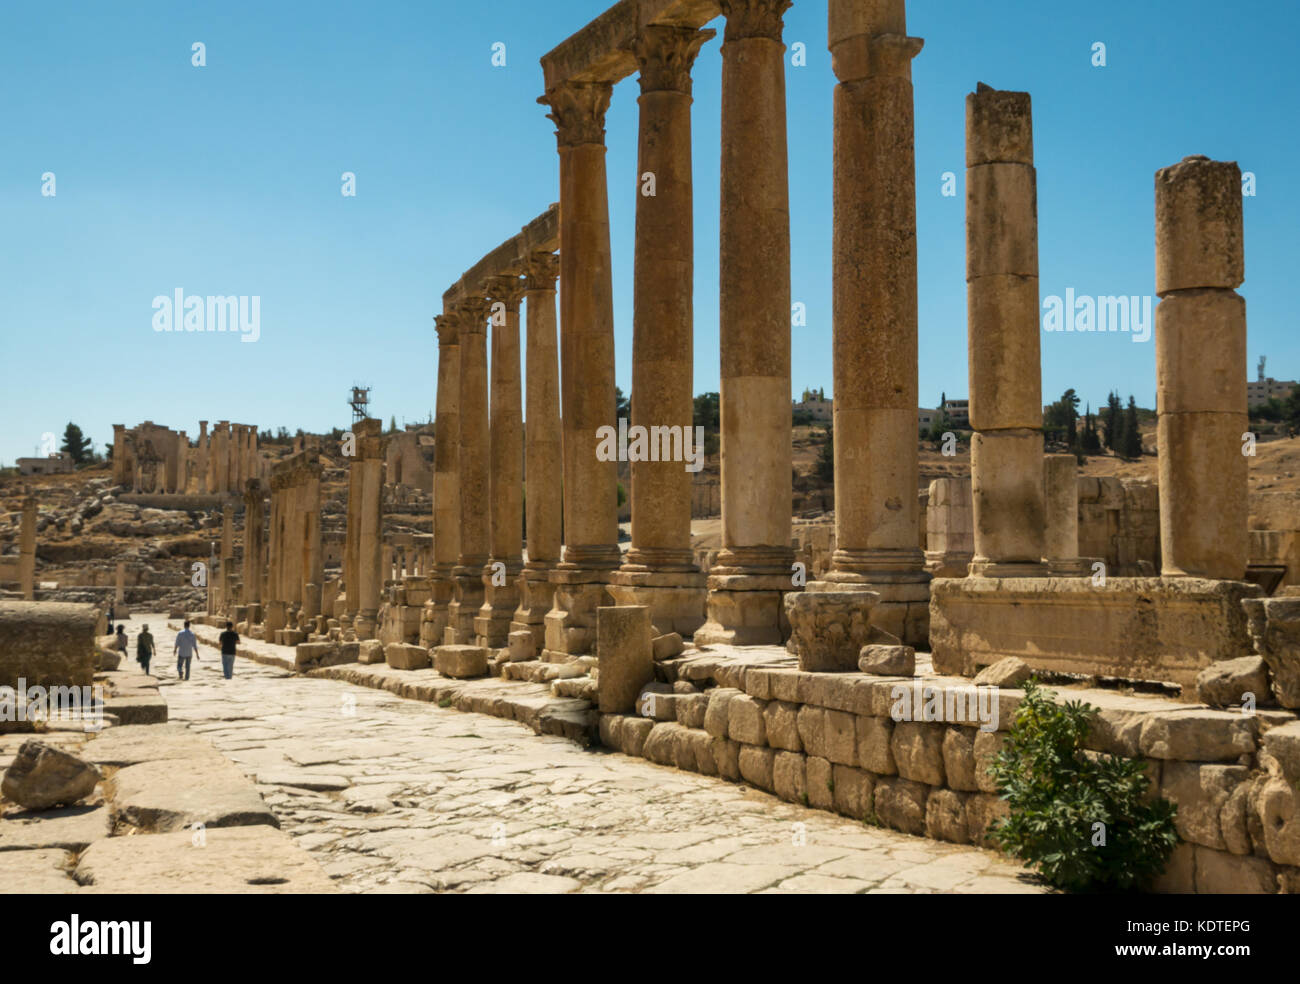 Los turistas que caminan a lo largo del Cardo, la ciudad romana de Jerash, la antigua Gerasa, sitio arqueológico y turístico, Jordania, Oriente Medio Foto de stock